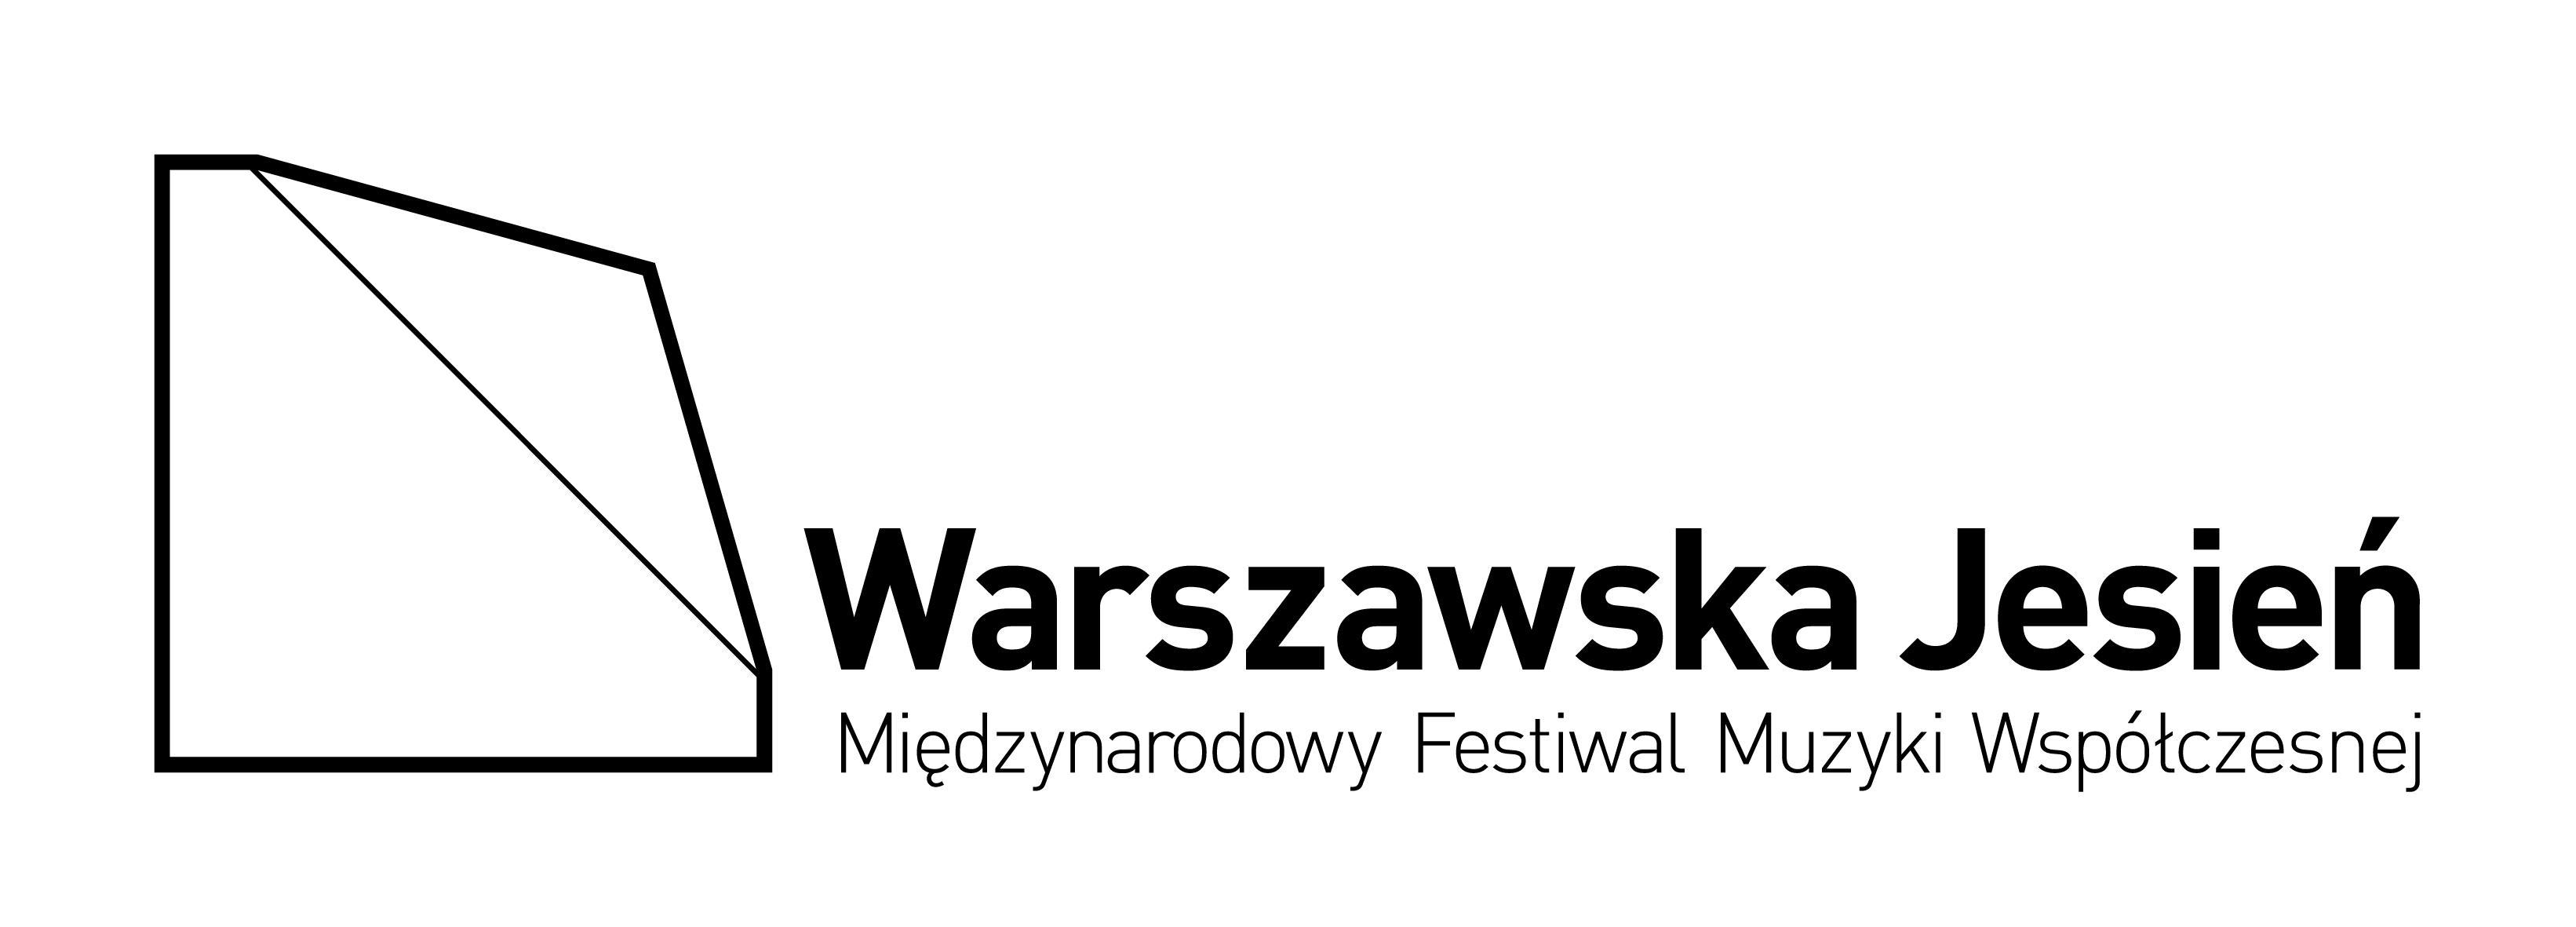 Warszawska Jesień, logo (zdjęcie pochodzi z materiałów organizatora)